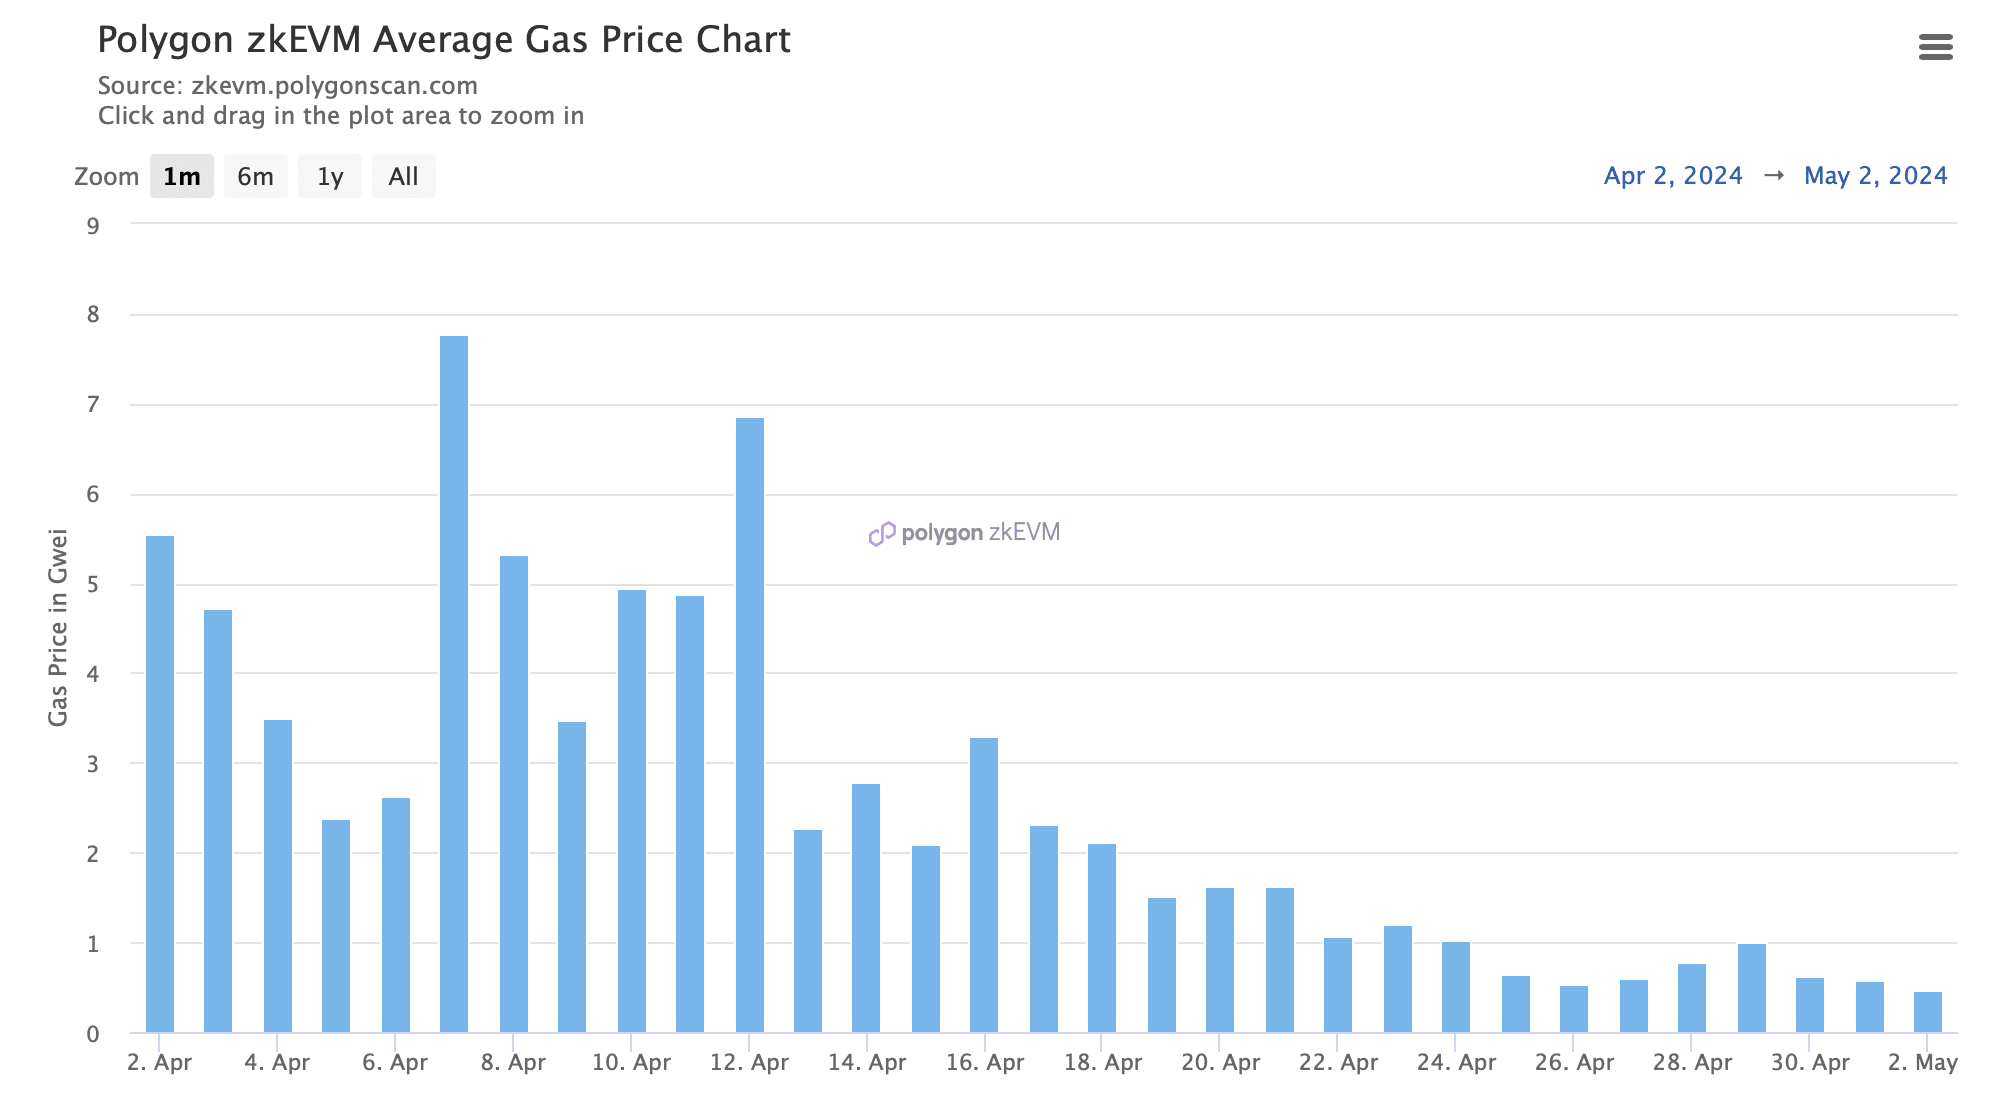 Der Gaspreis in zkEVM ist gefallen